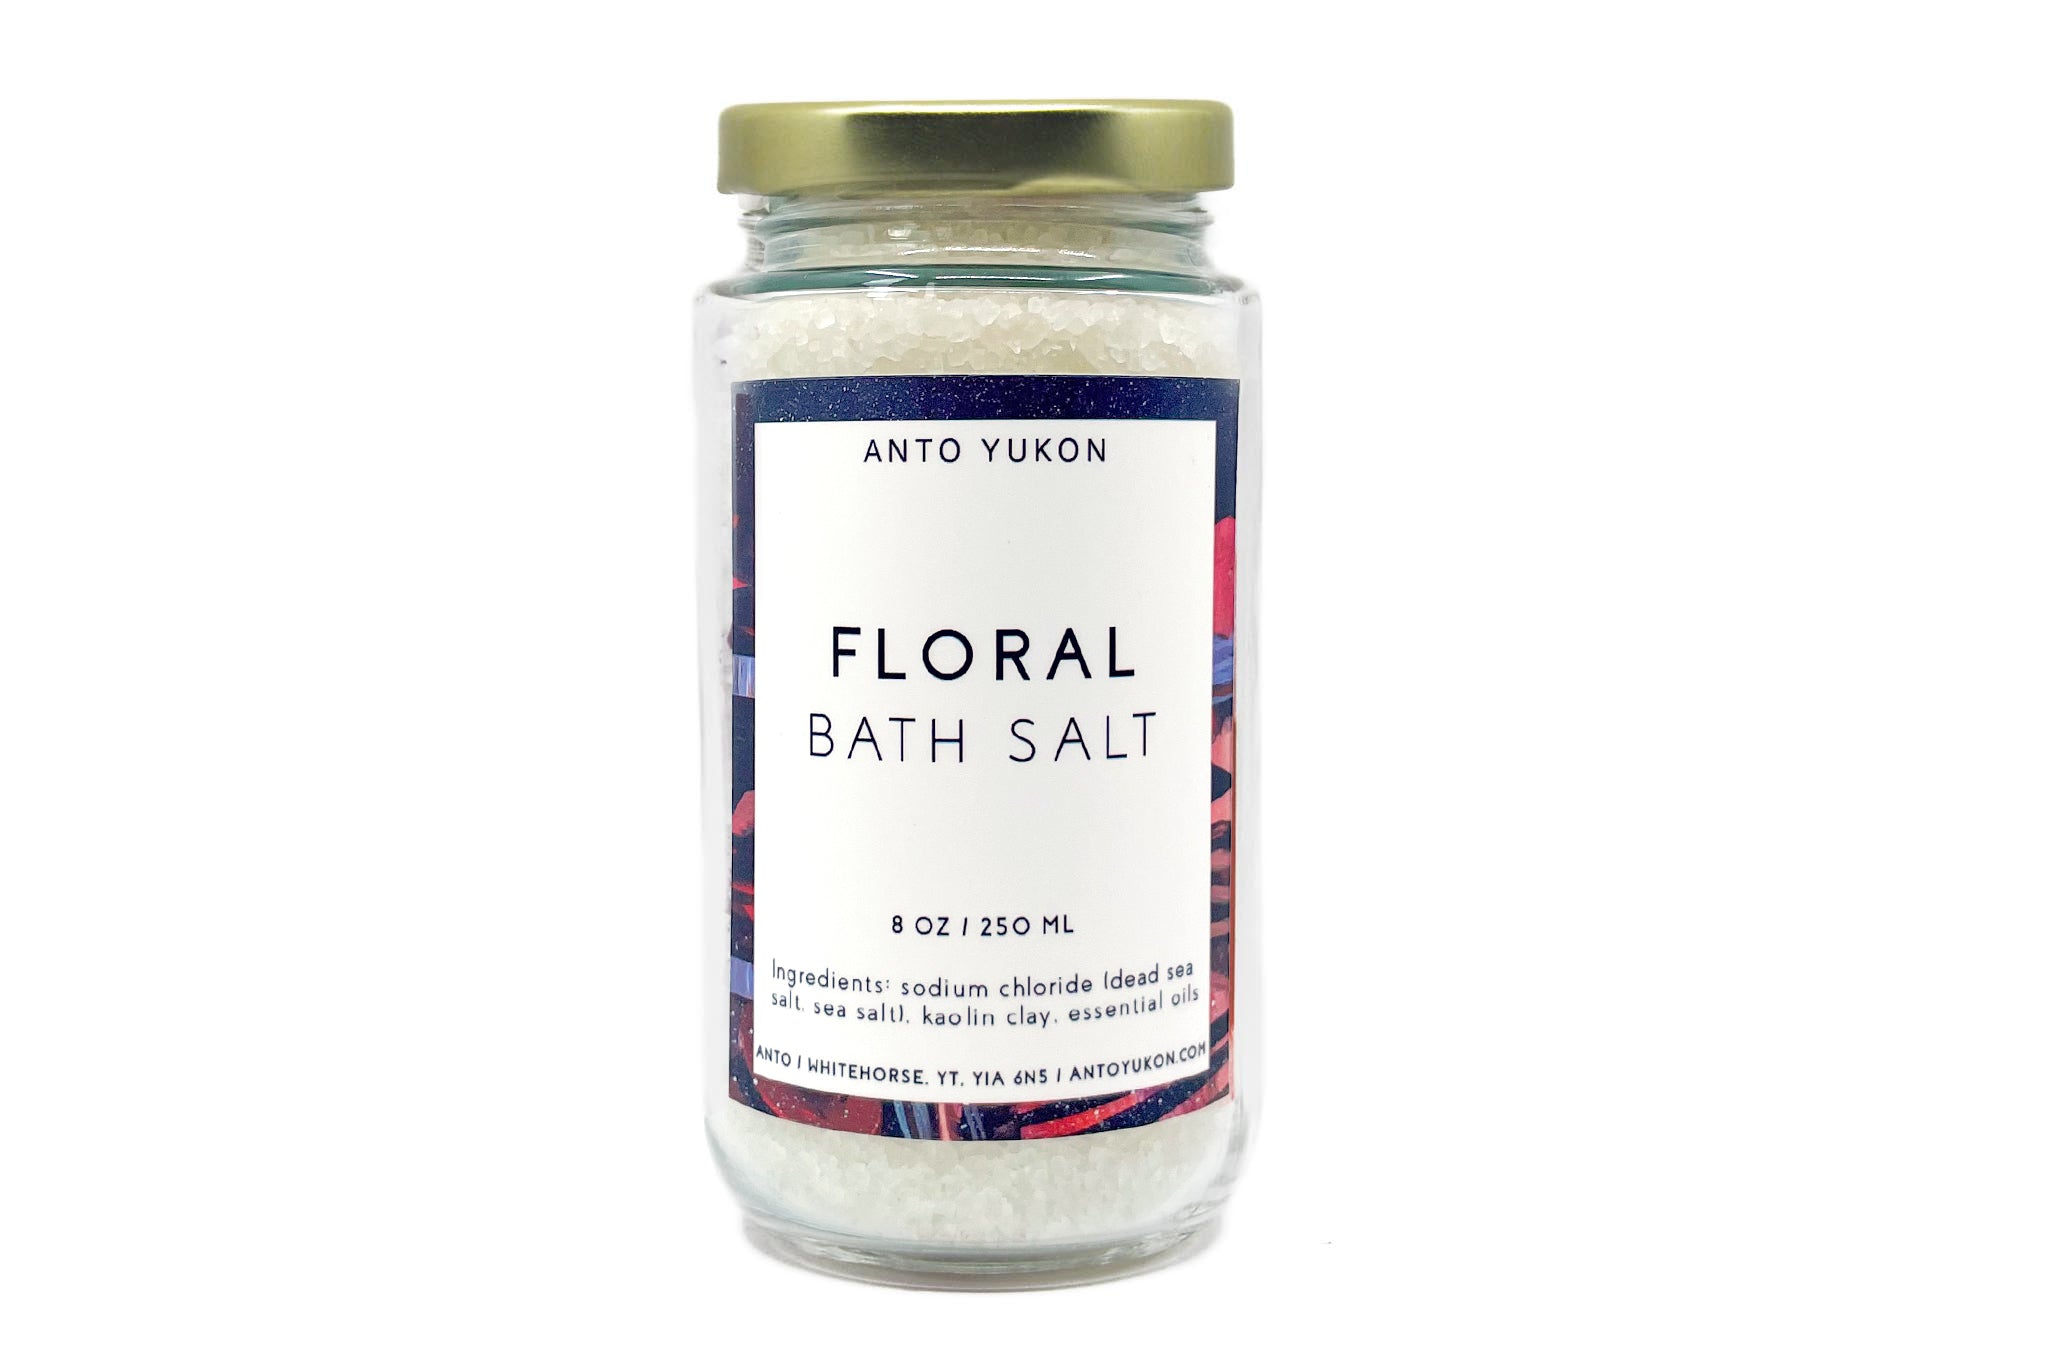 Floral Bath Salt